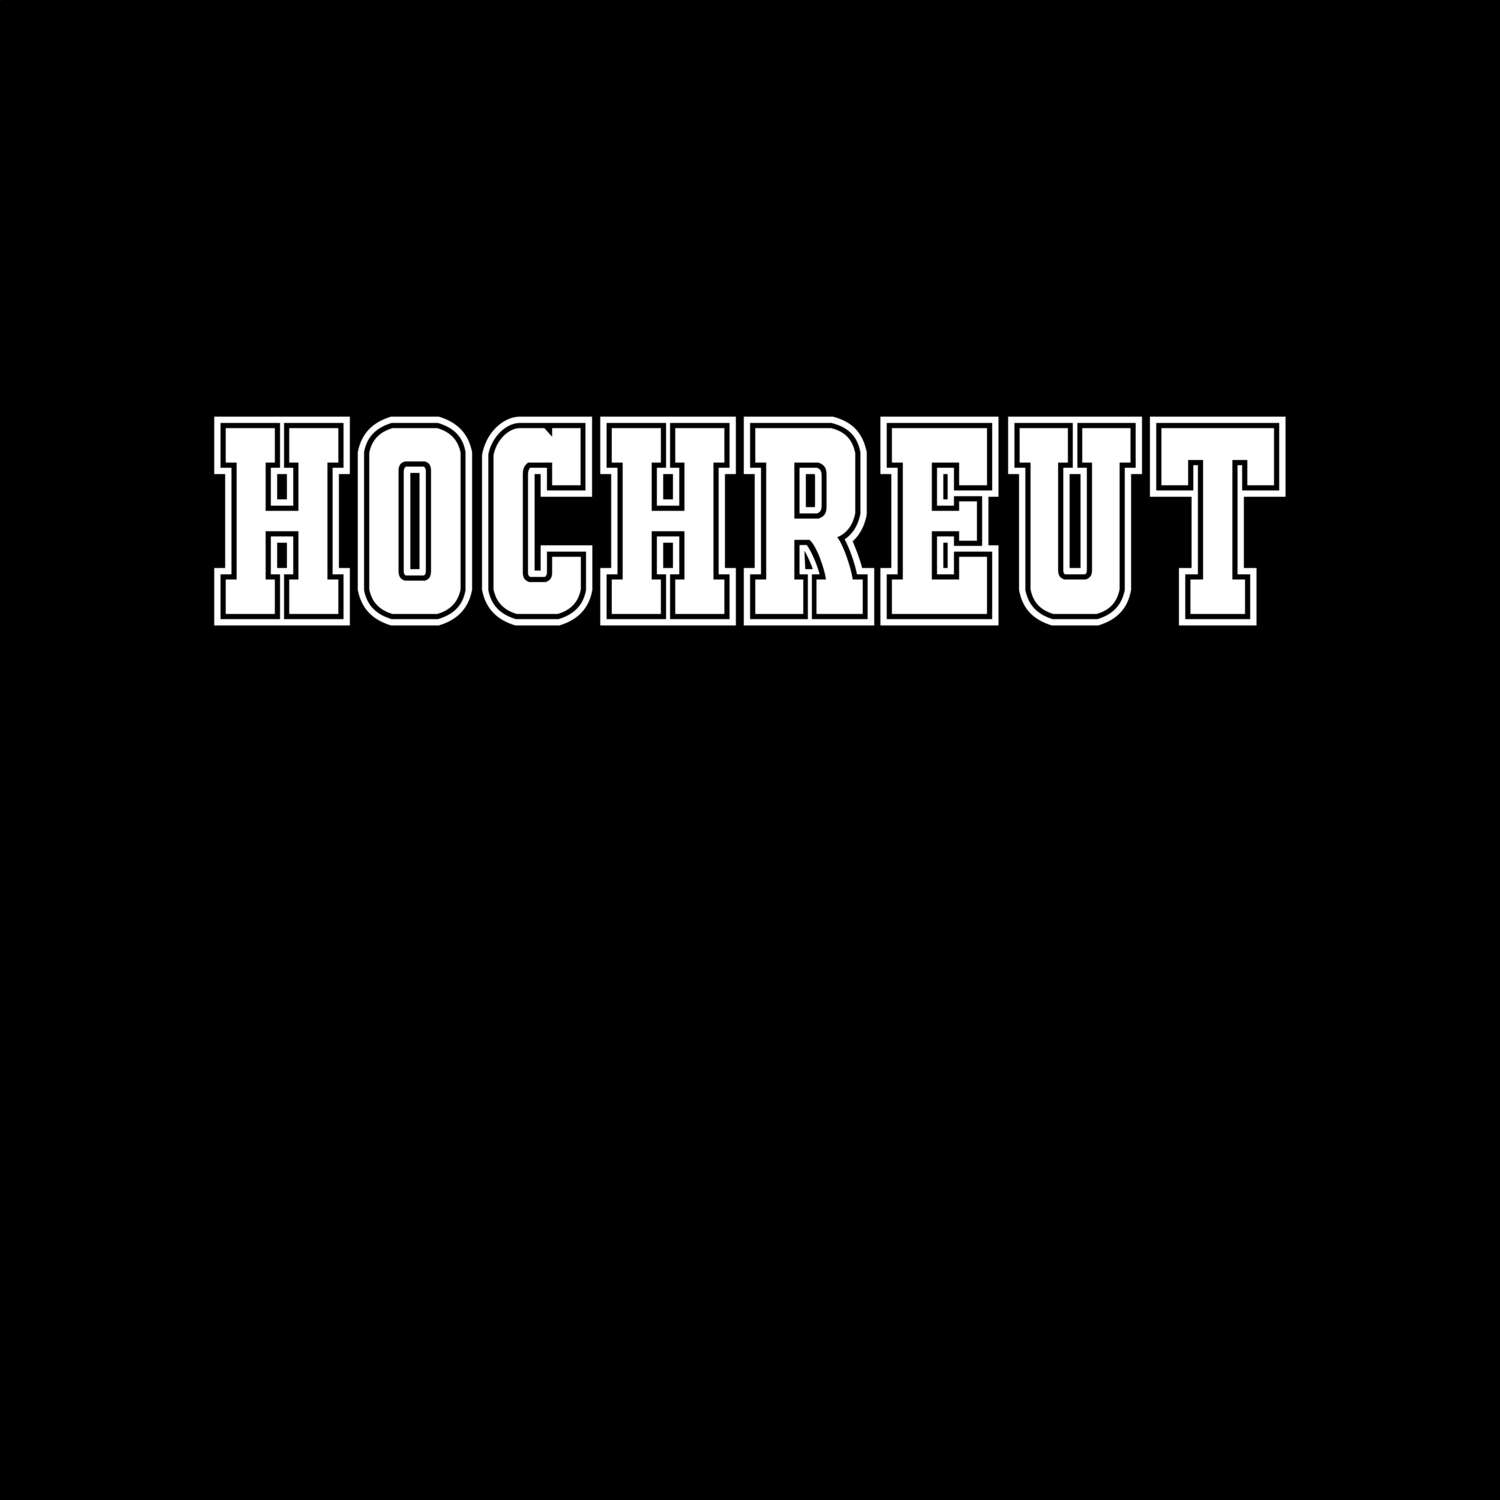 Hochreut T-Shirt »Classic«